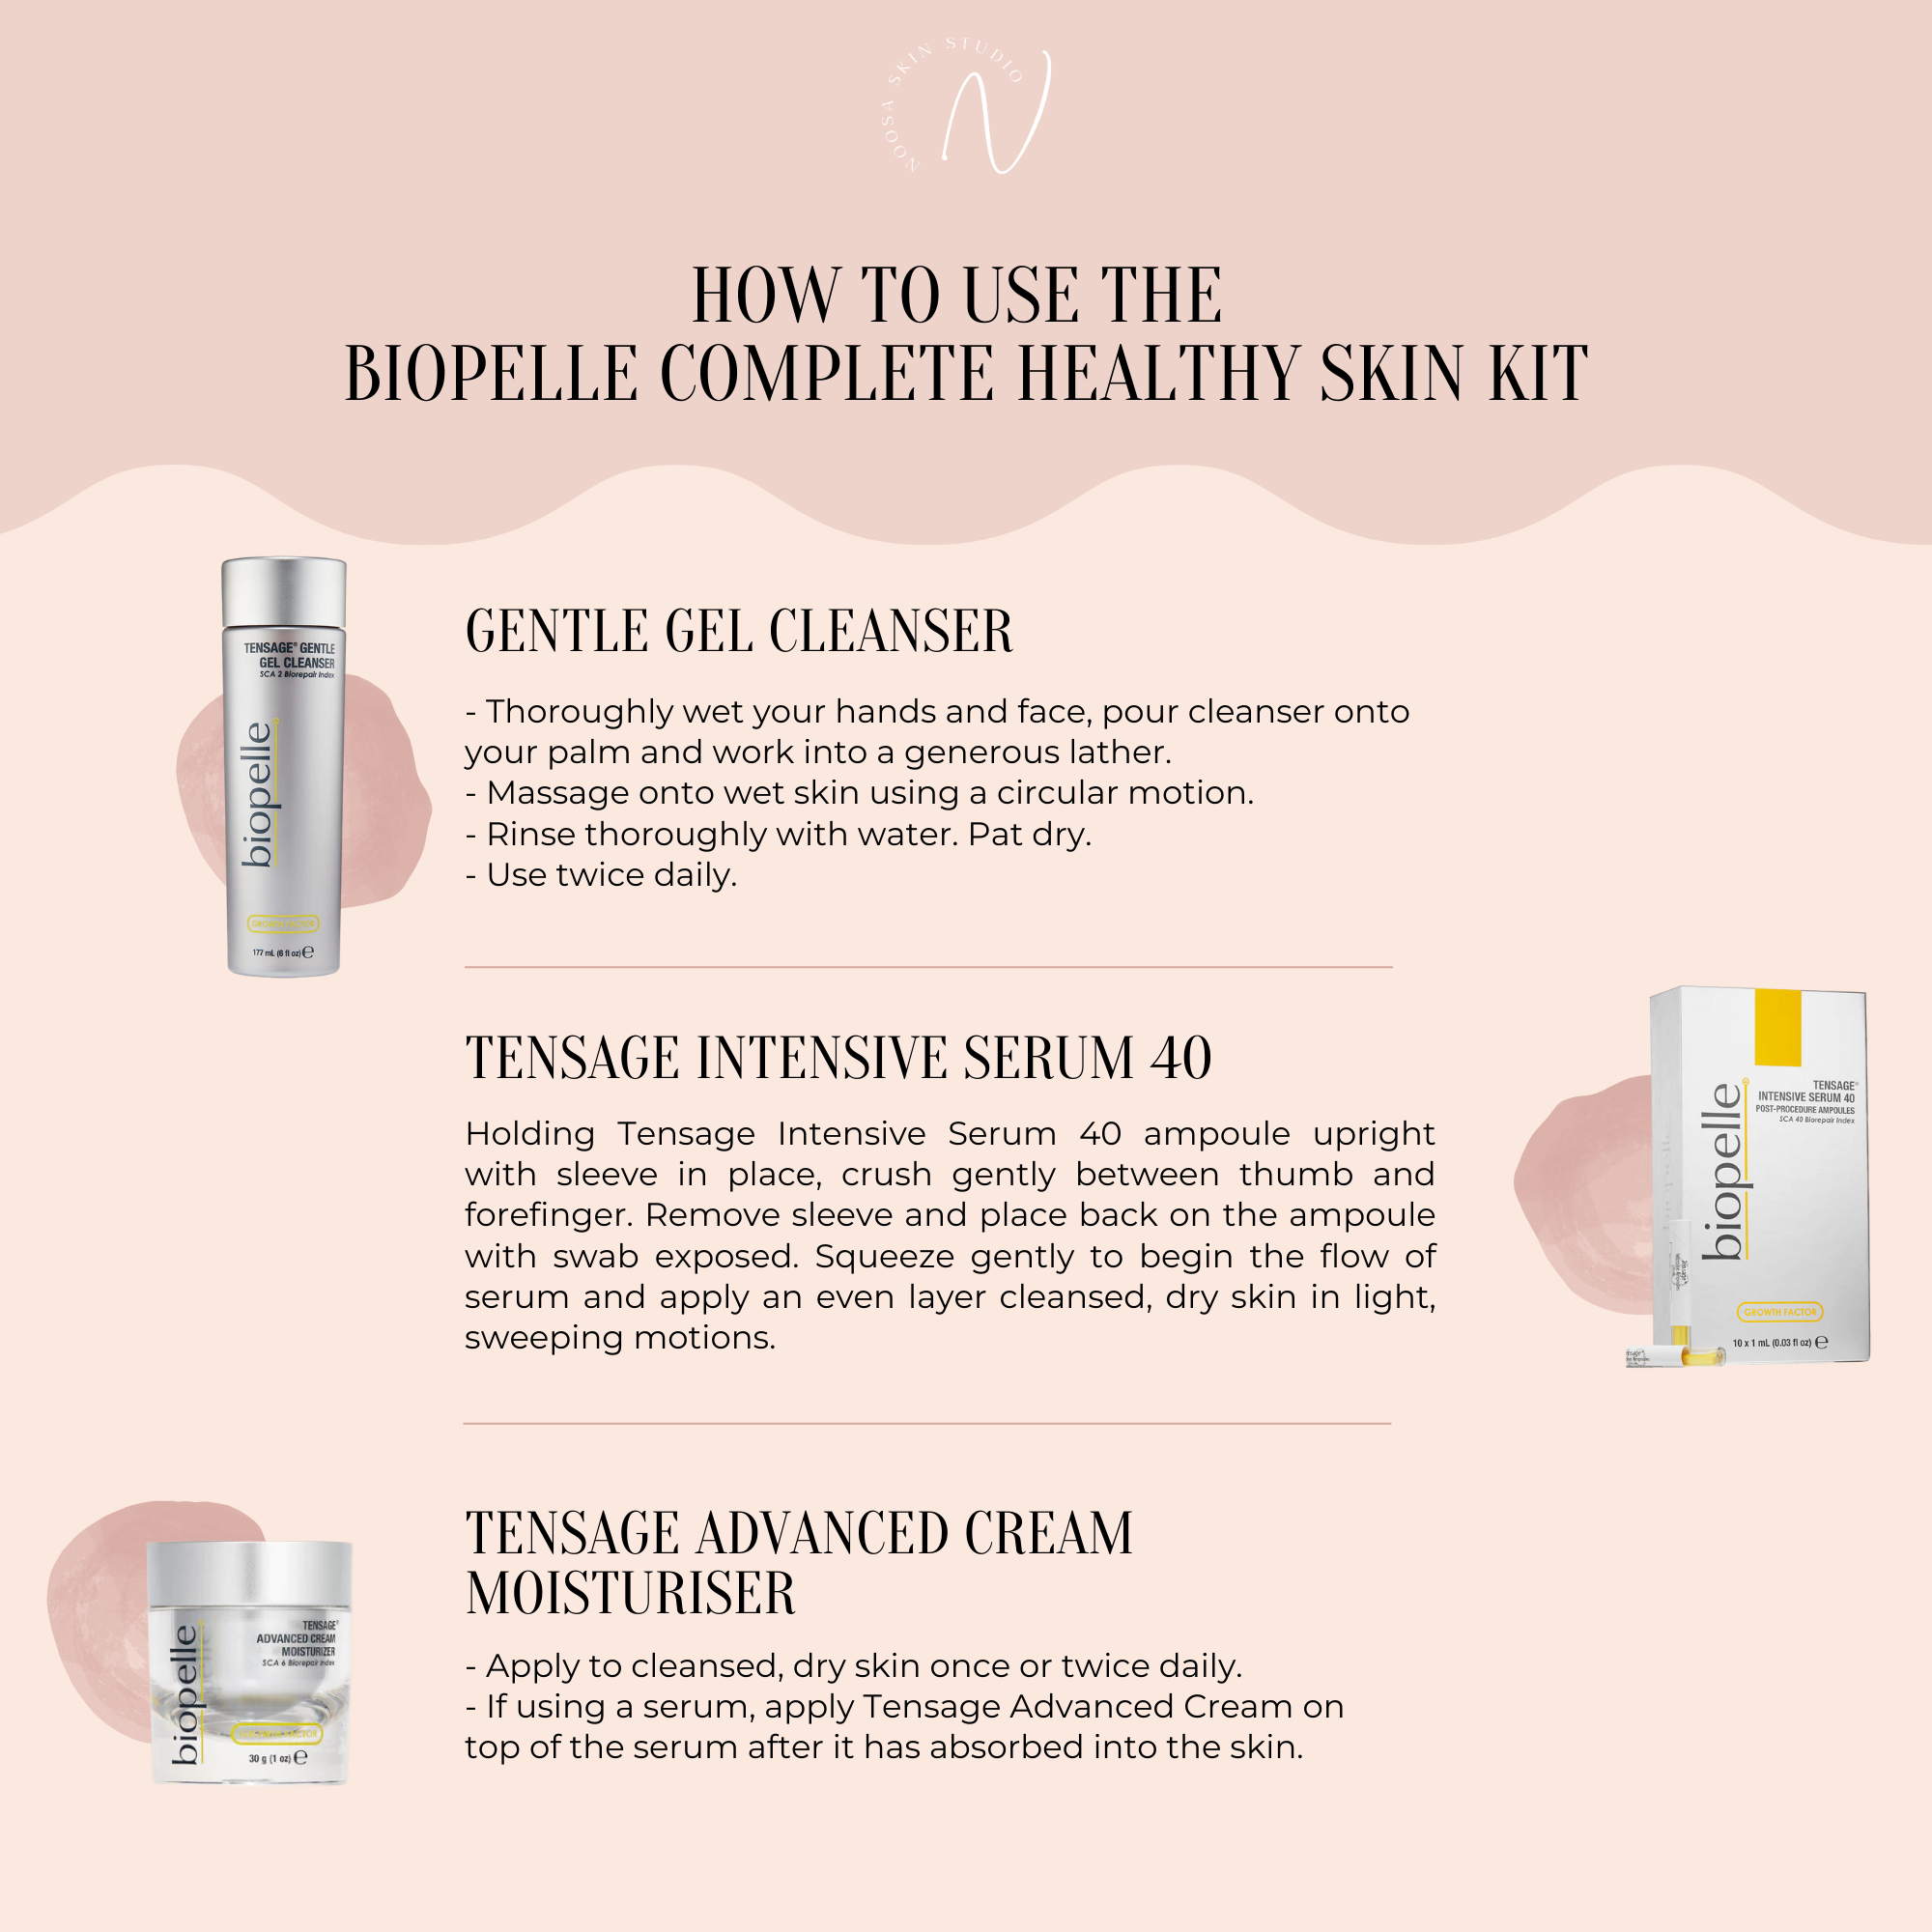 Biopelle Complete Healthy Skin Kit